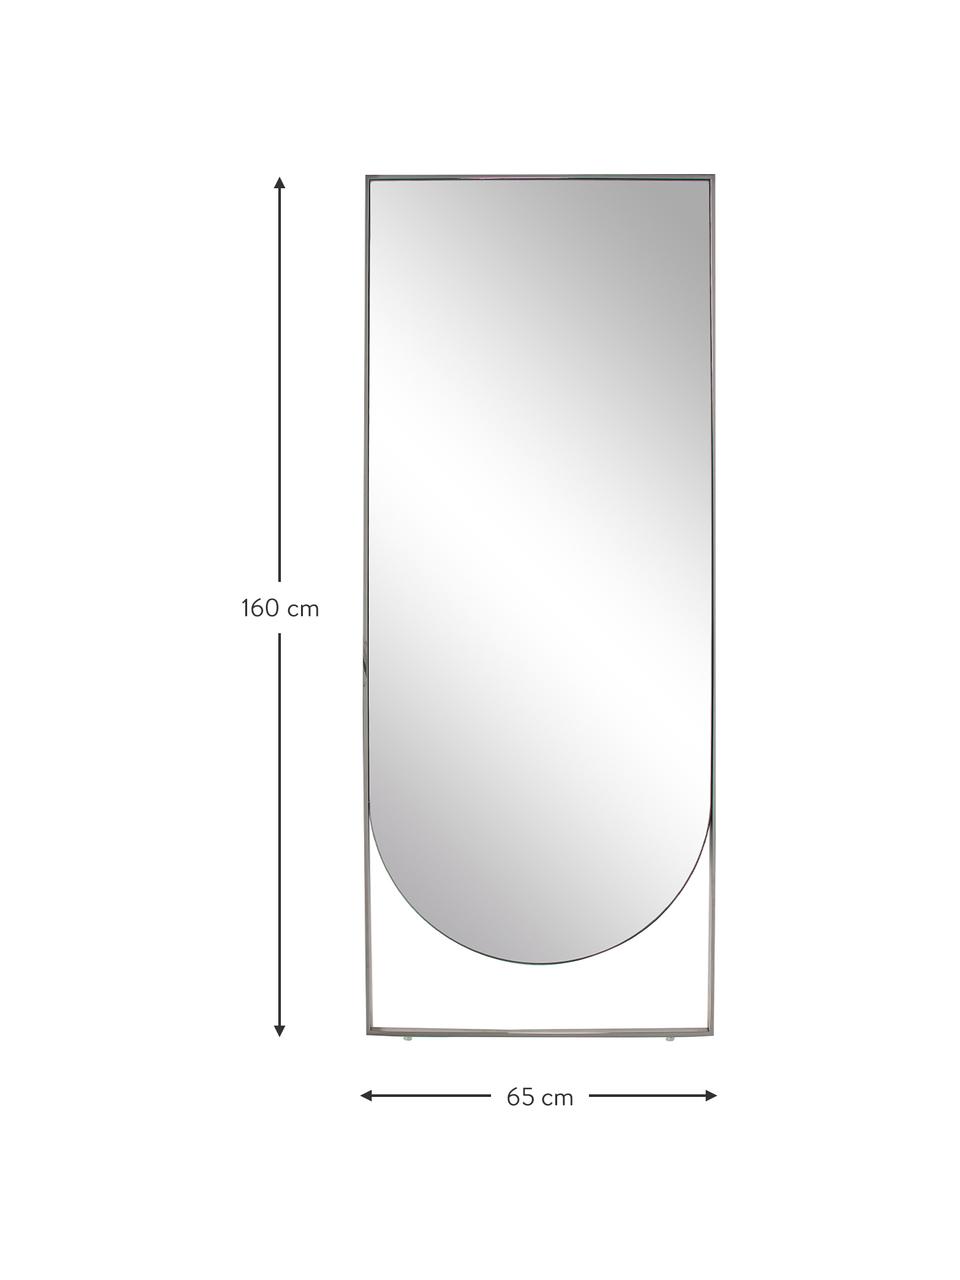 Eckiger Anlehnspiegel Masha, Rahmen: Metall, pulverbeschichtet, Rückseite: Mitteldichte Holzfaserpla, Spiegelfläche: Spiegelglas, Silberfaben, B 65 x H 160 cm